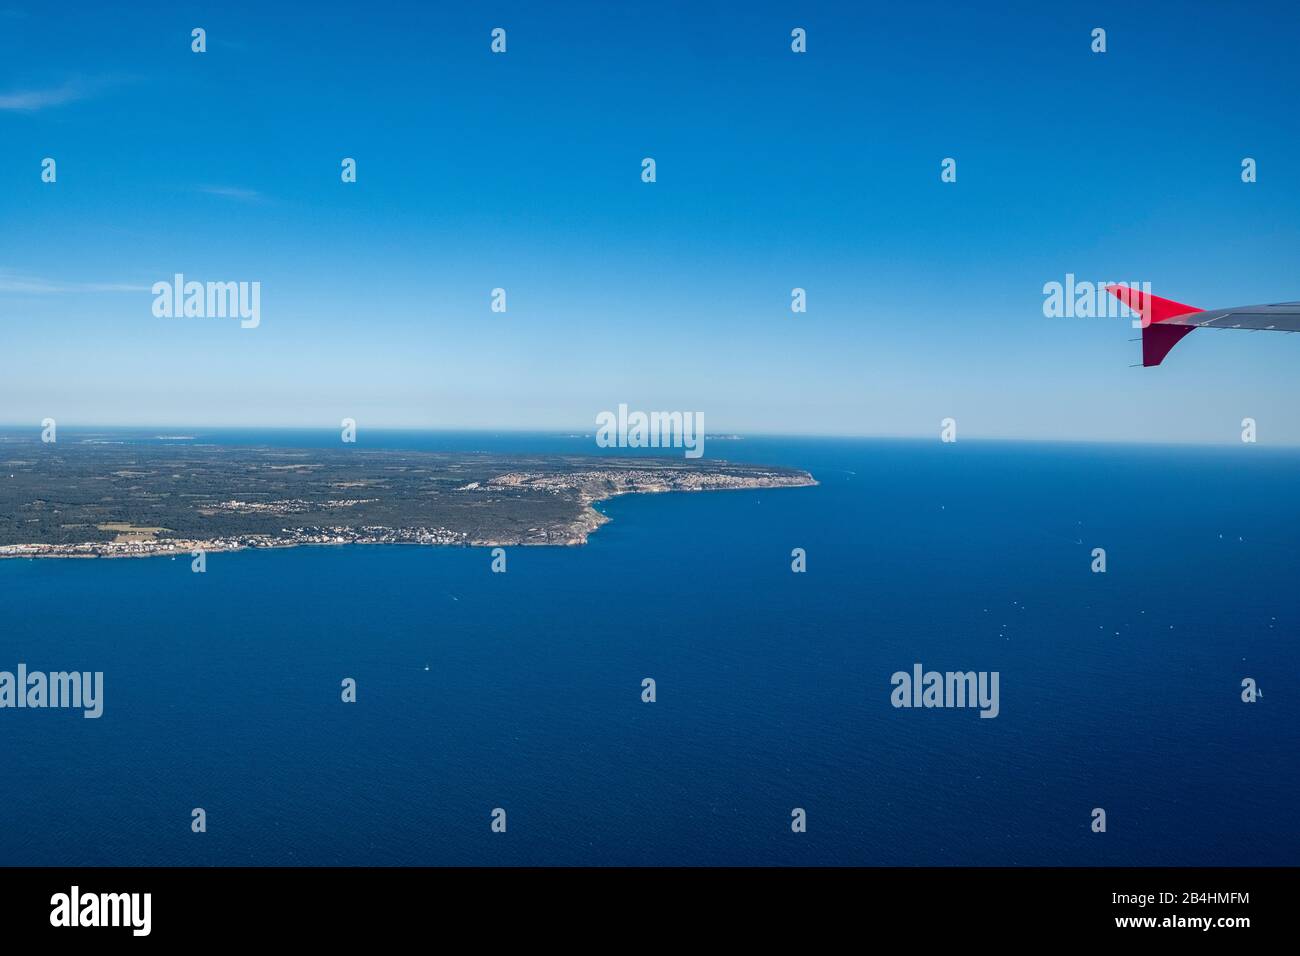 Blick aus dem Fenster eines Flugzeugs auf die Insel Mallorca nach dem abheben Foto Stock